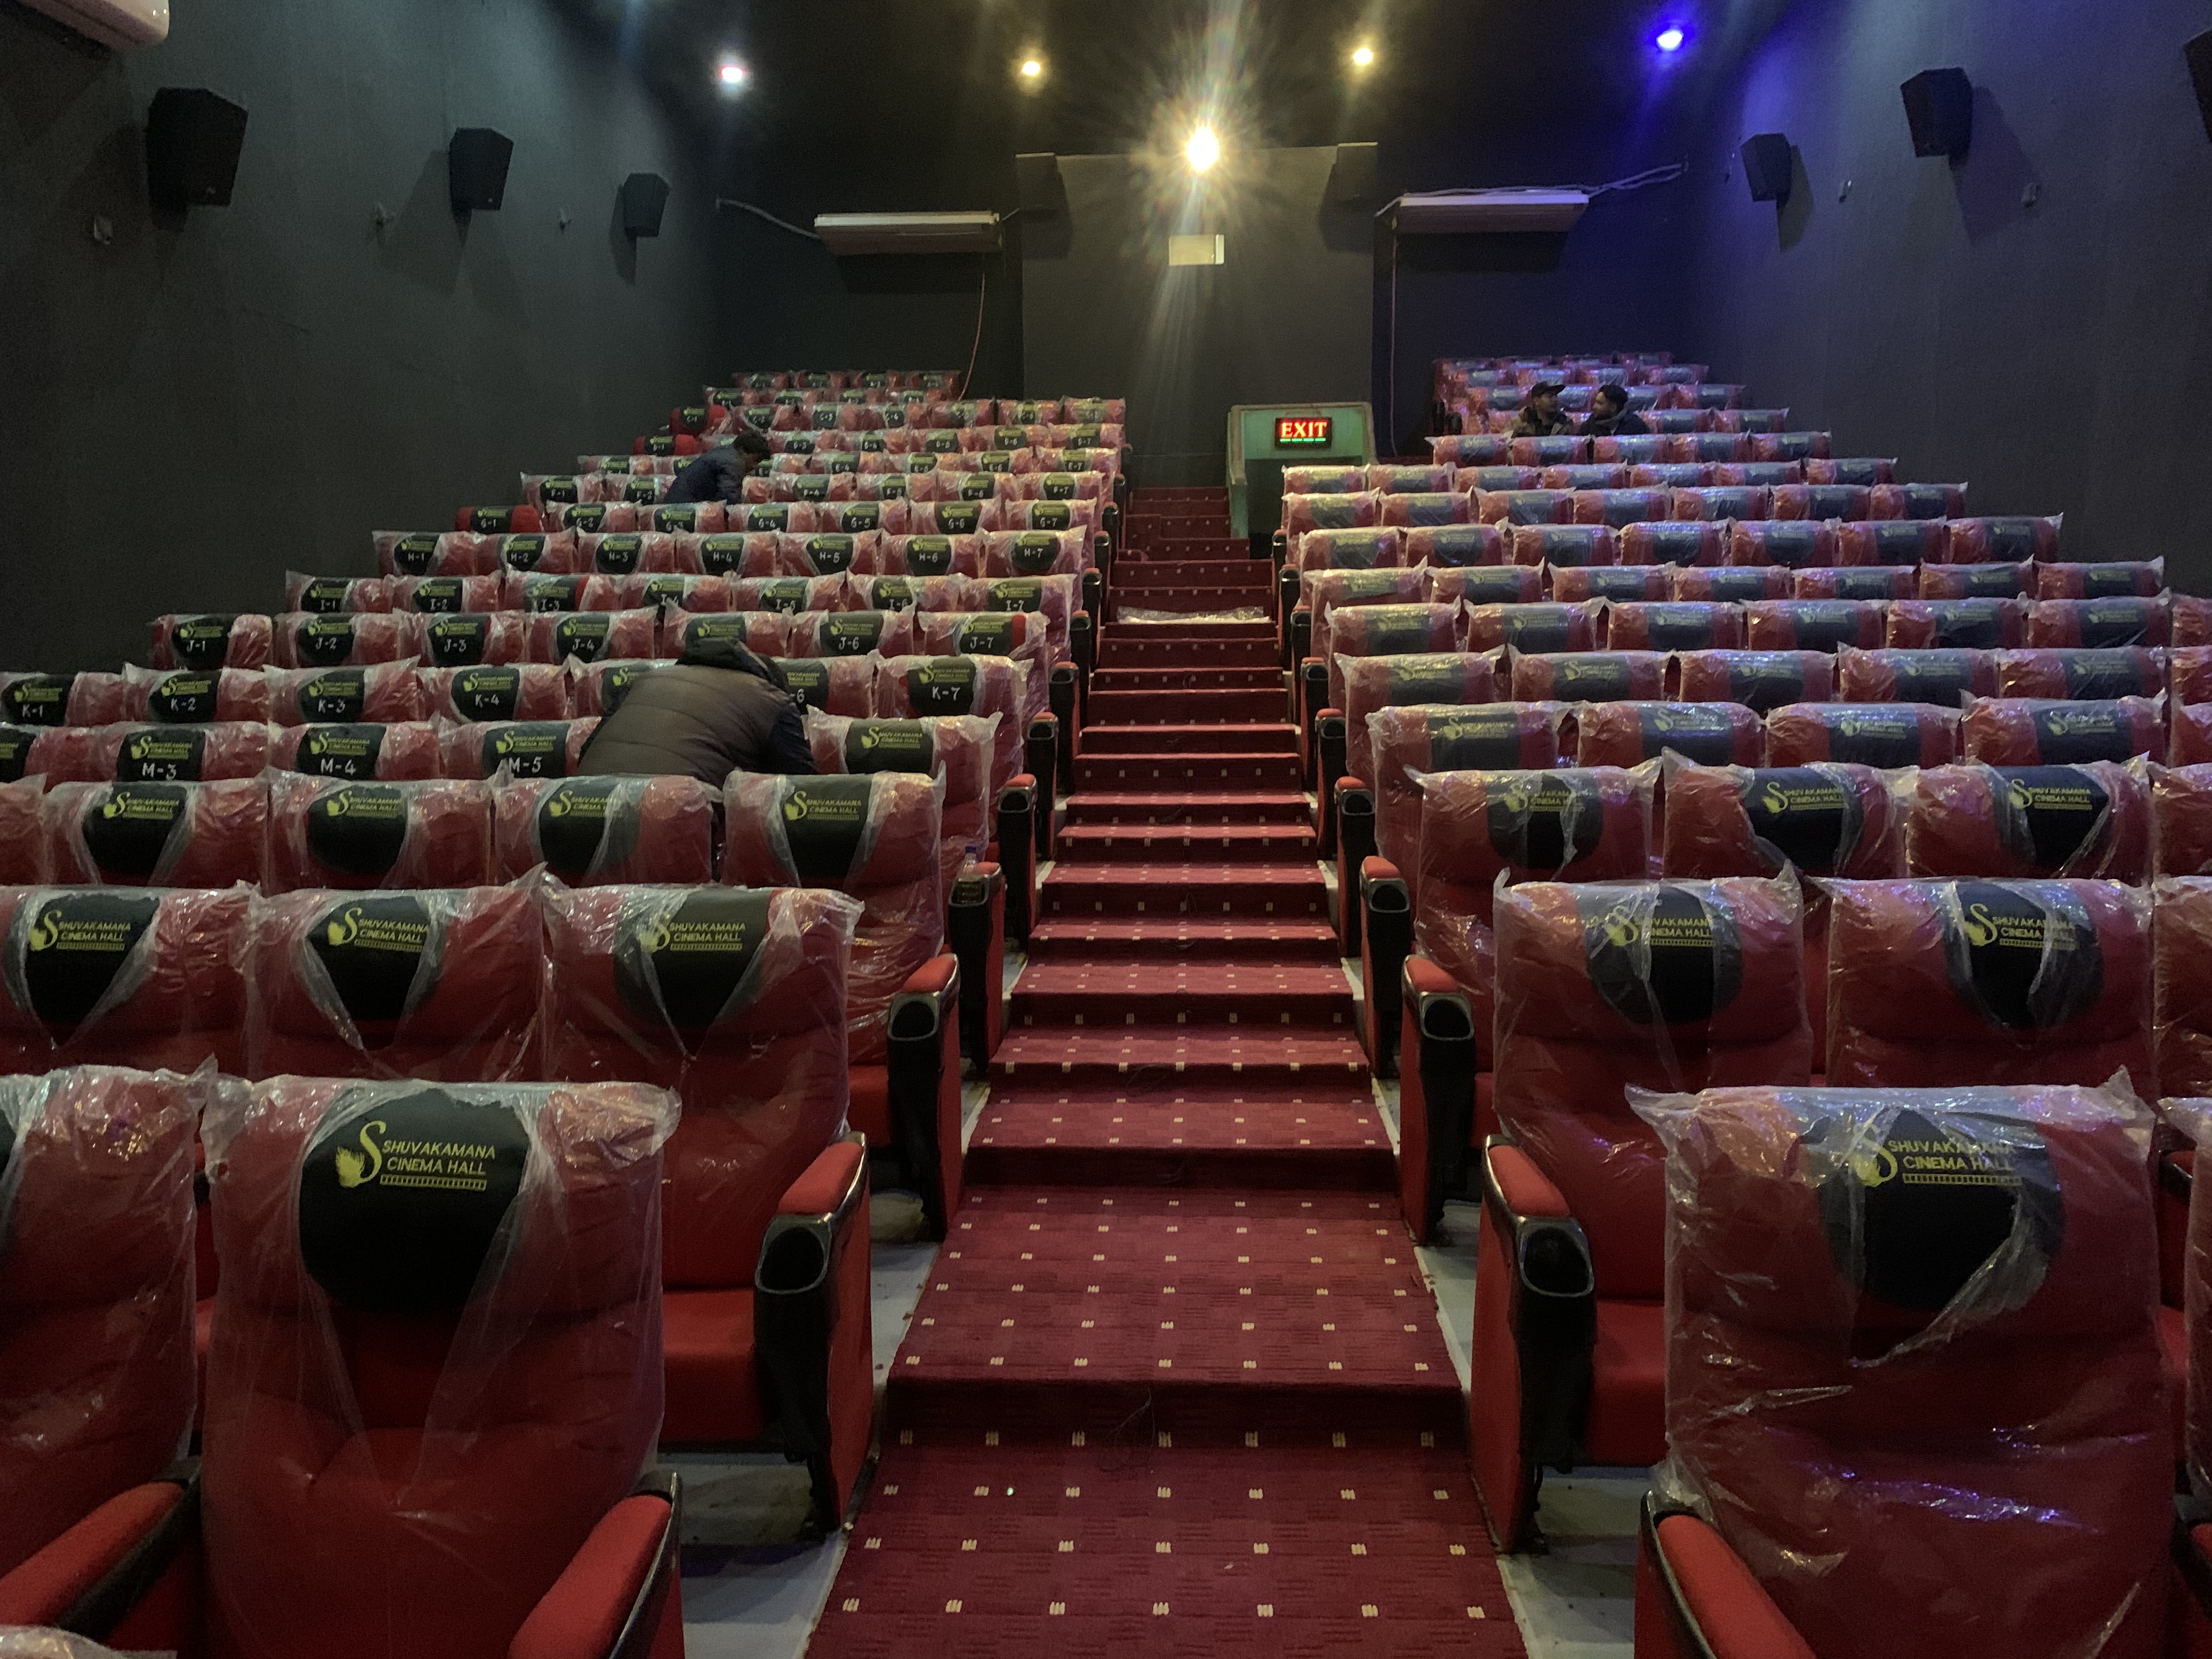 बनेपा स्थित शुभकामना सिनेमा घर अब डिजिटल प्रविधिमा